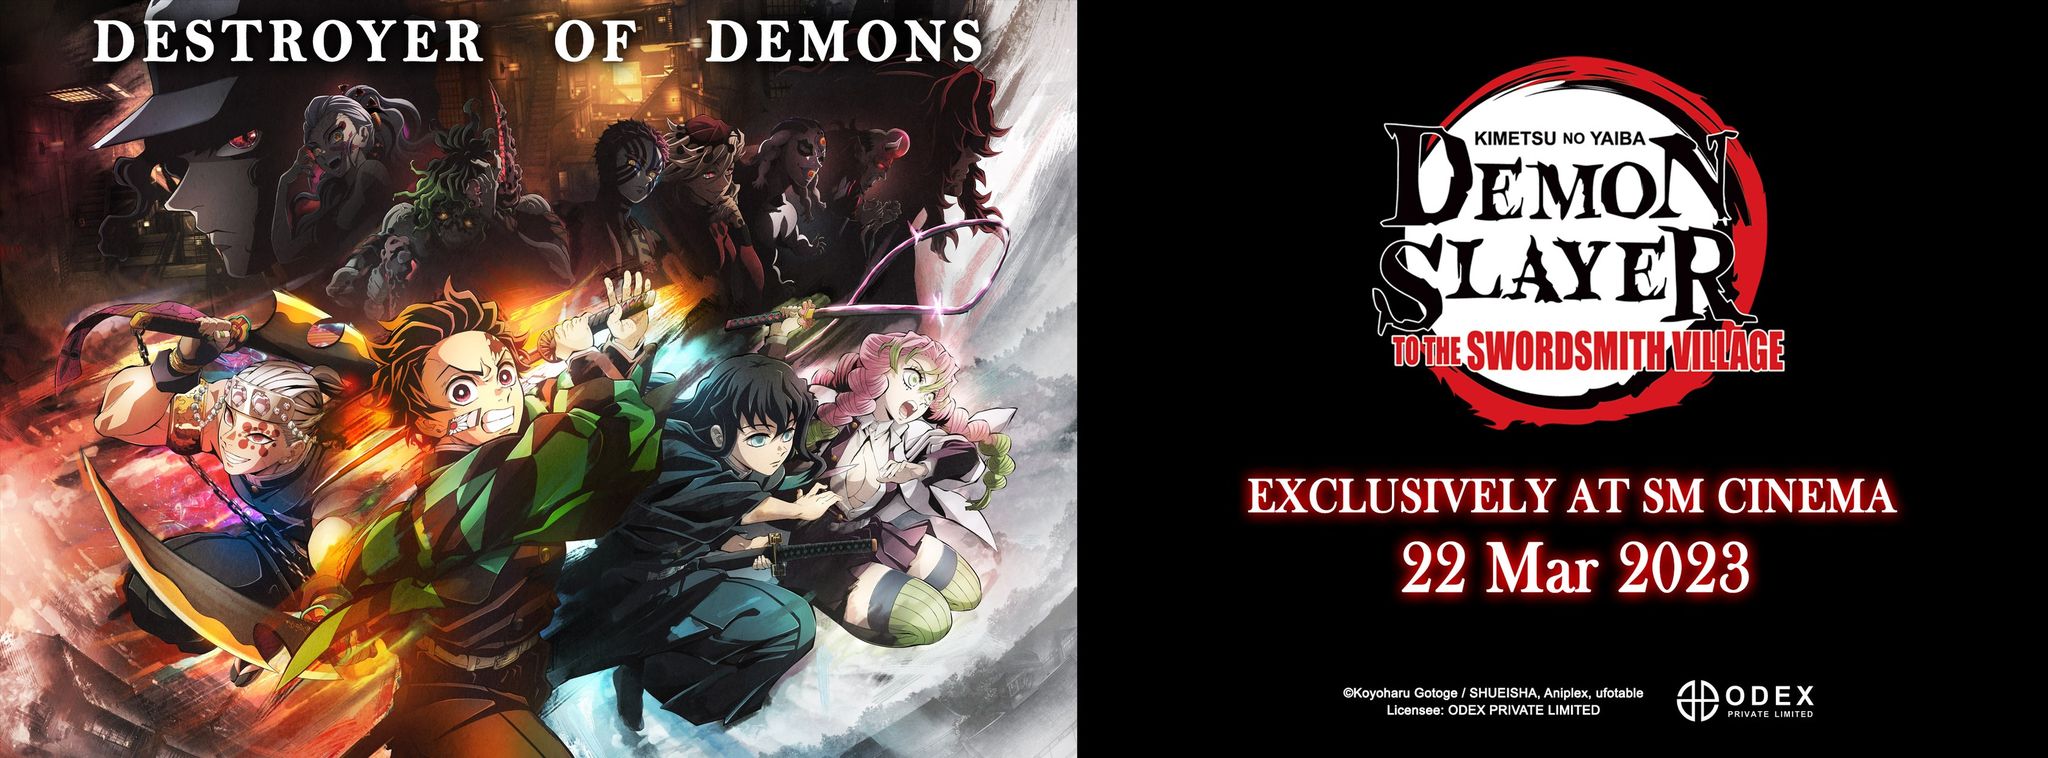 Demon Slayer Swordsmith Village Philippines cinema release date announced